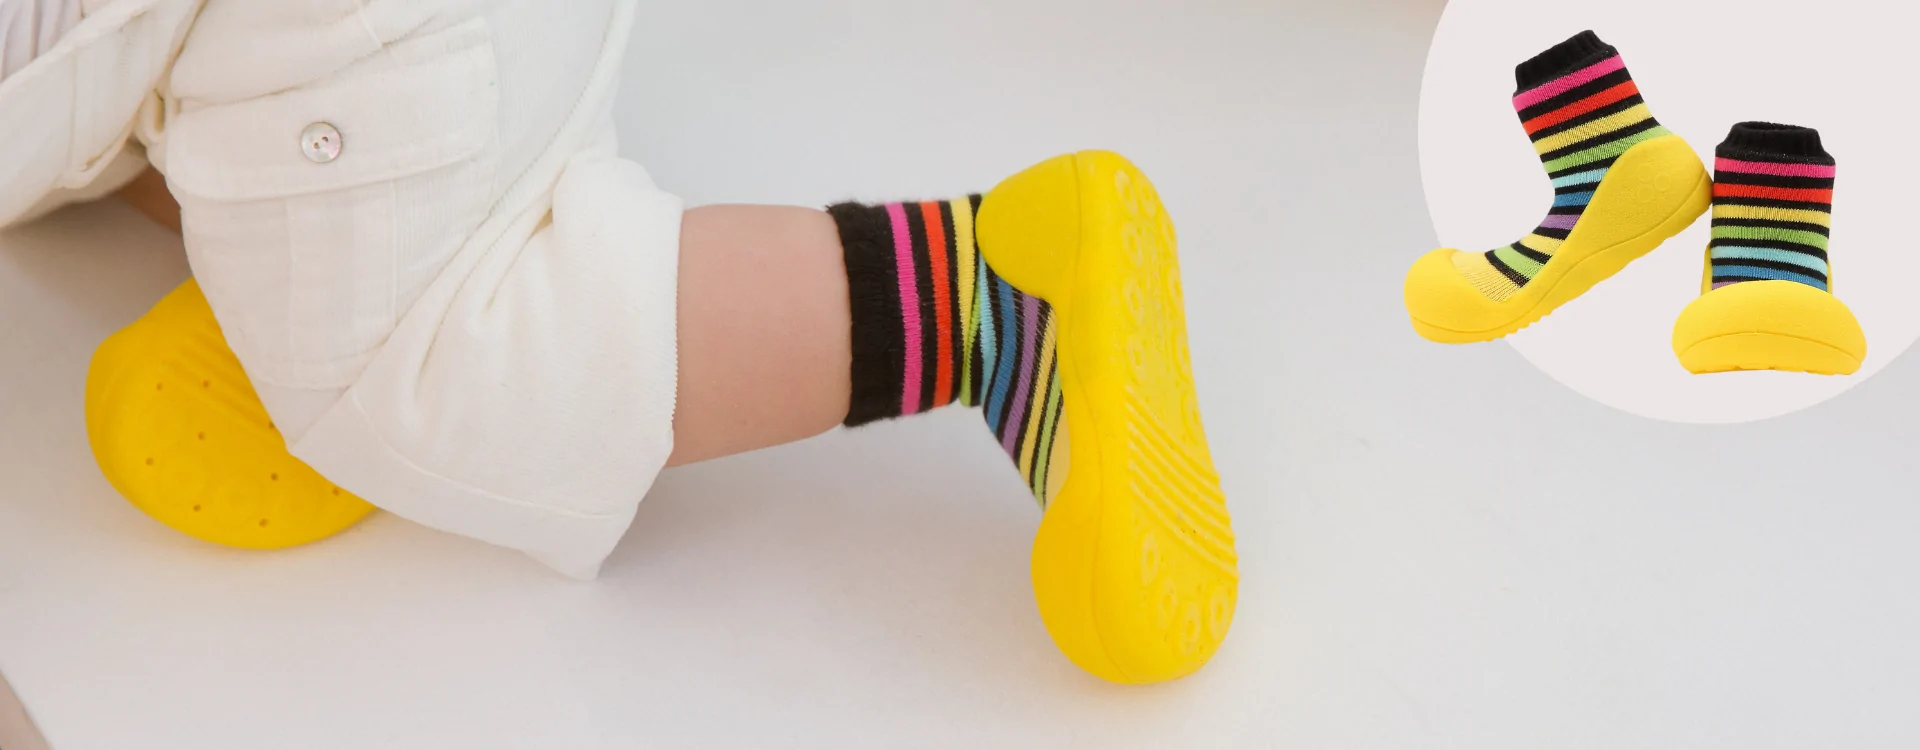 Dlaczego buciki dla dzieci Attipas mają taki niespotykany kształt?